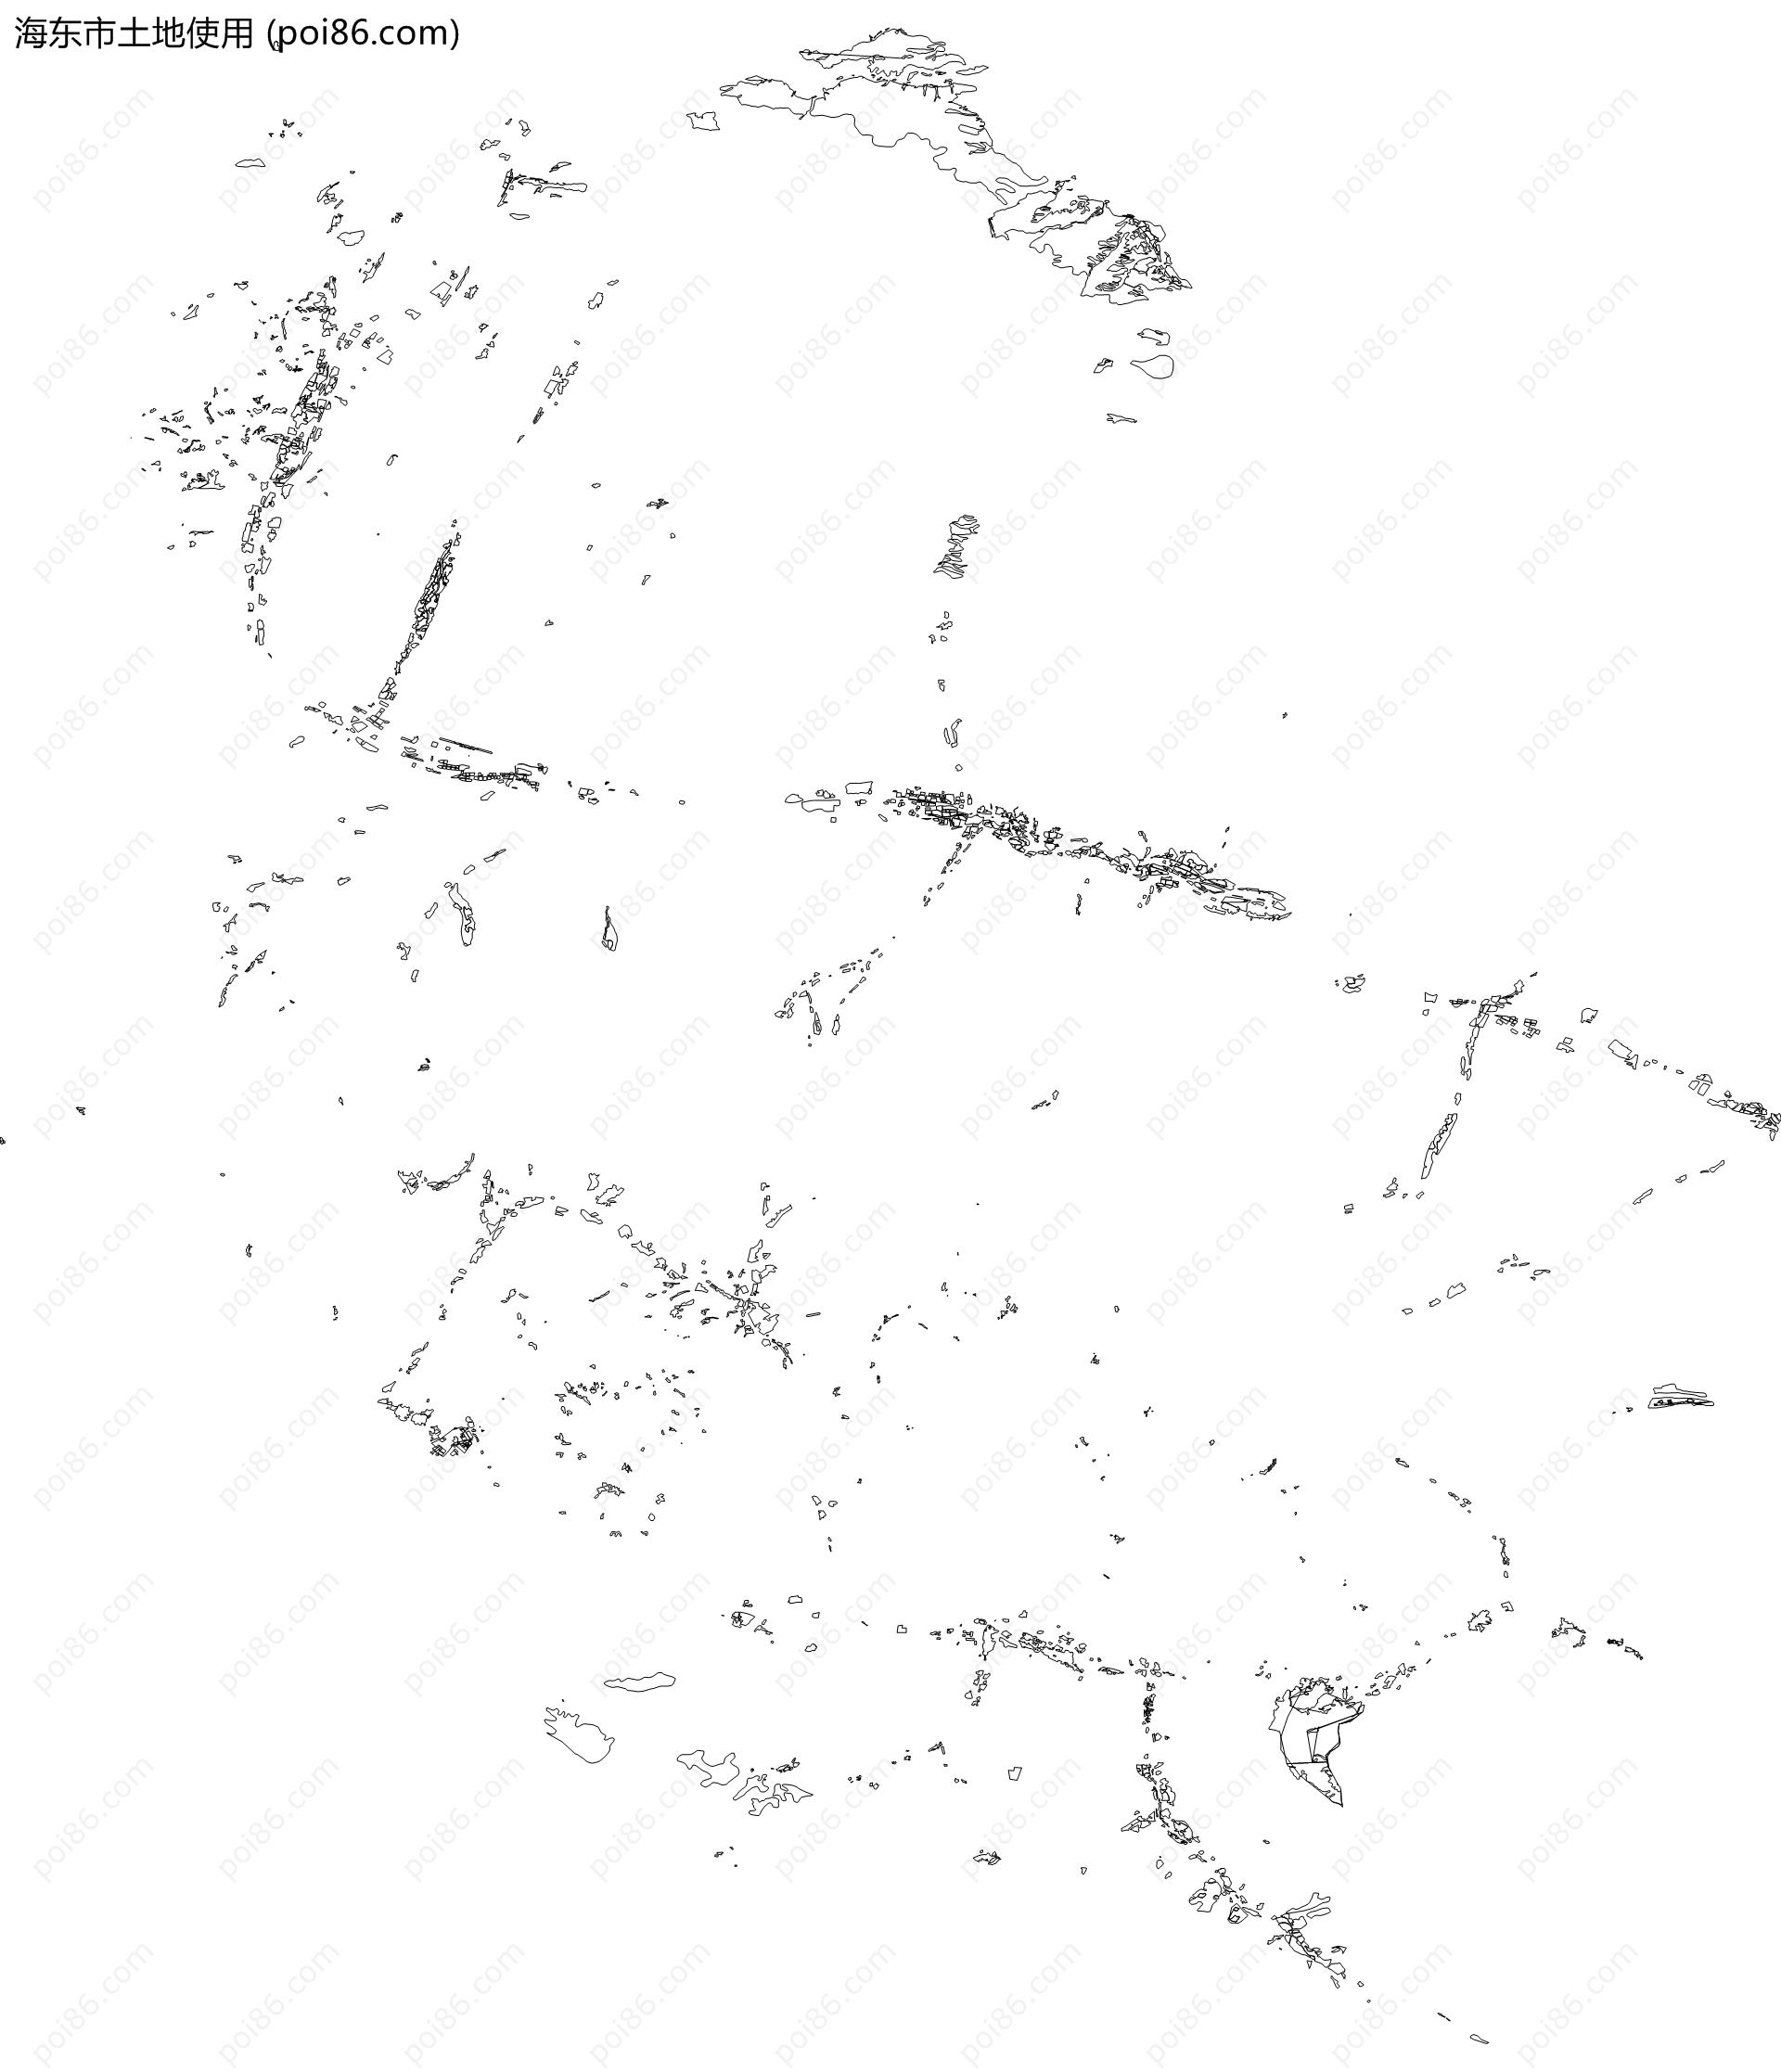 海东市土地使用地图